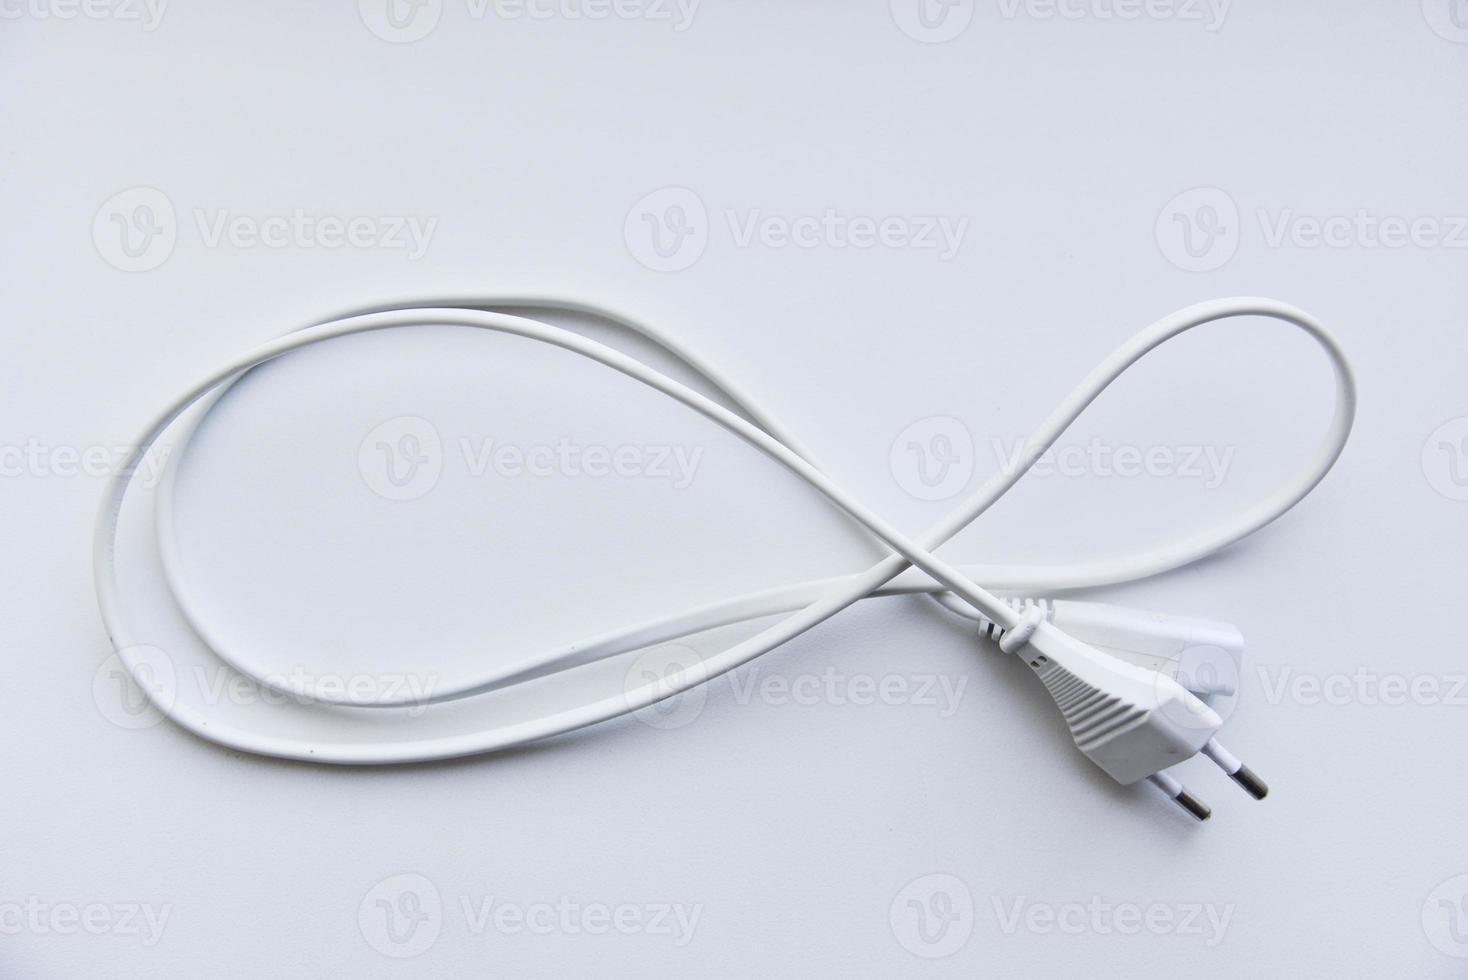 cabo de alimentação branco em um fundo branco. cabo elétrico em um fundo branco. foto